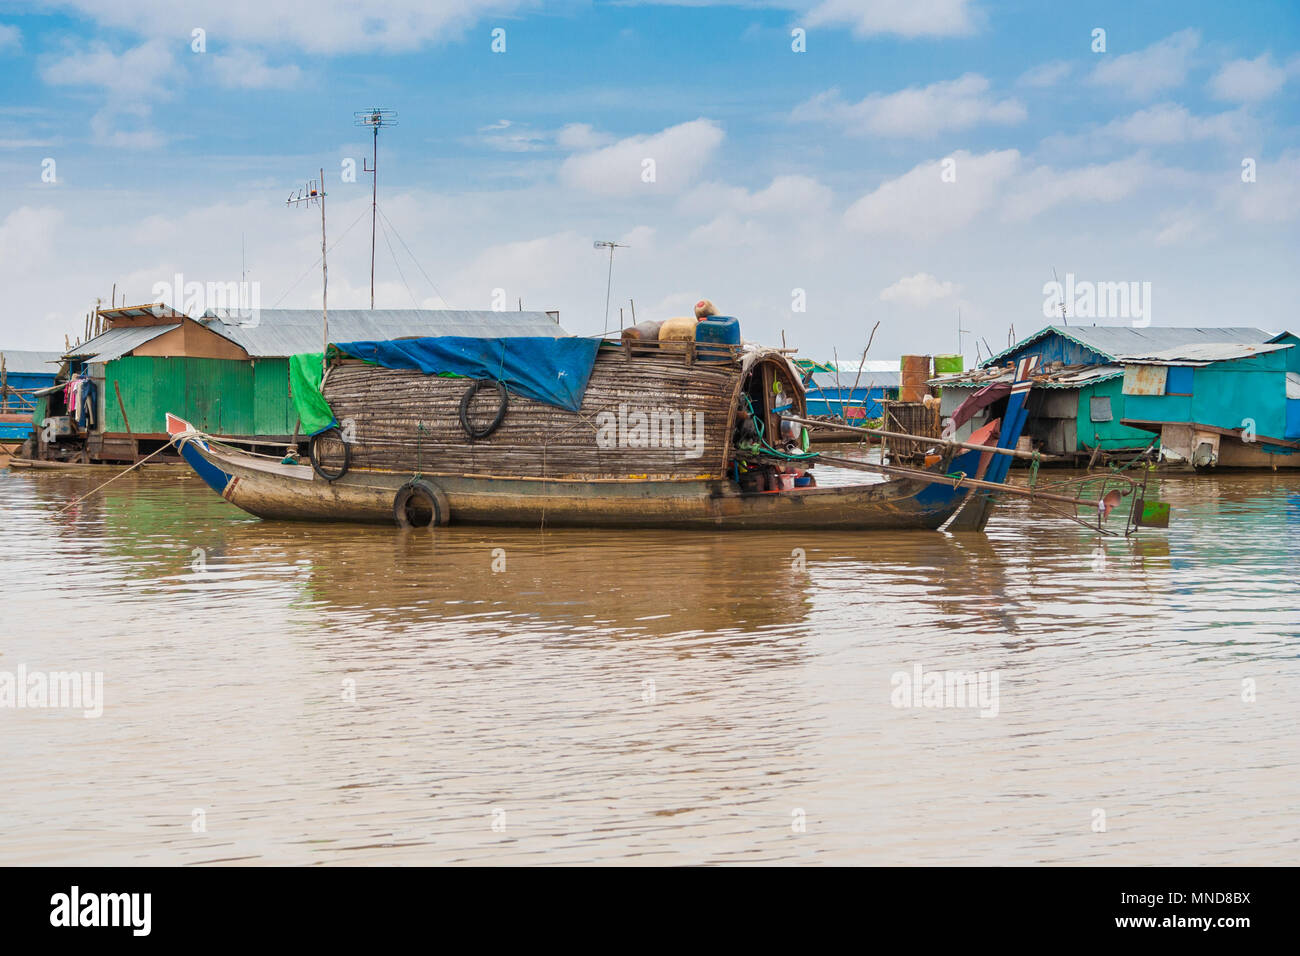 Eine sampan - wie Boot, einschließlich ein kleines Tierheim mit einem geschwungenen Dach aus Holz und Stroh, dass eine dauerhafte Behausung in Chong Kneas sein könnte. Stockfoto